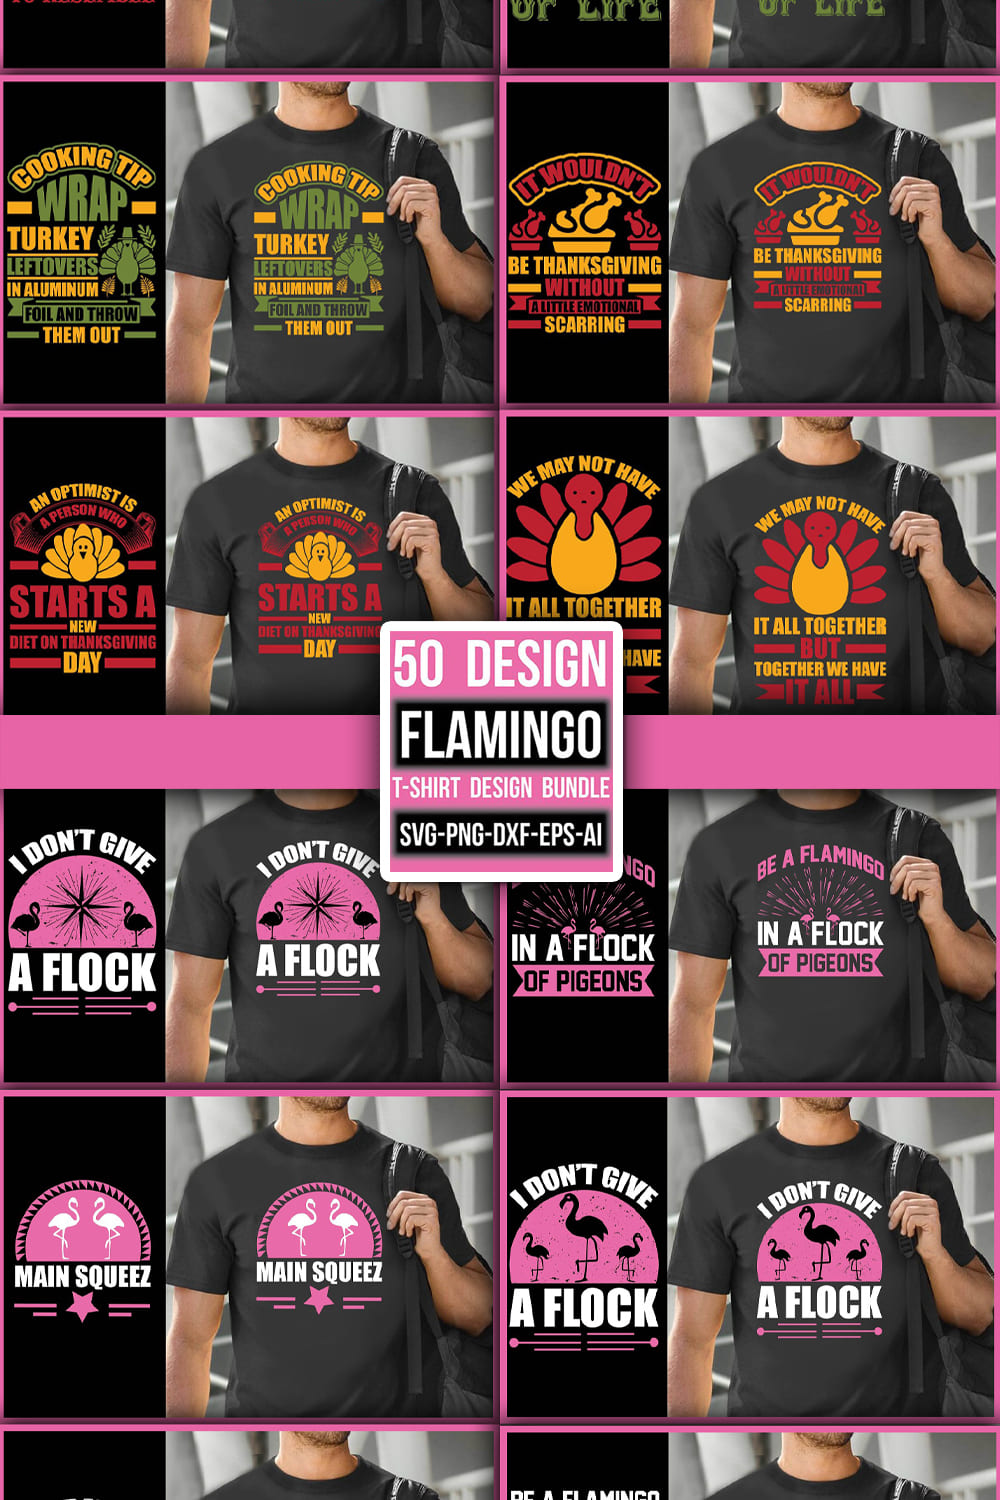 Flamingo T-shirt Design Bundle - pinterest image preview.